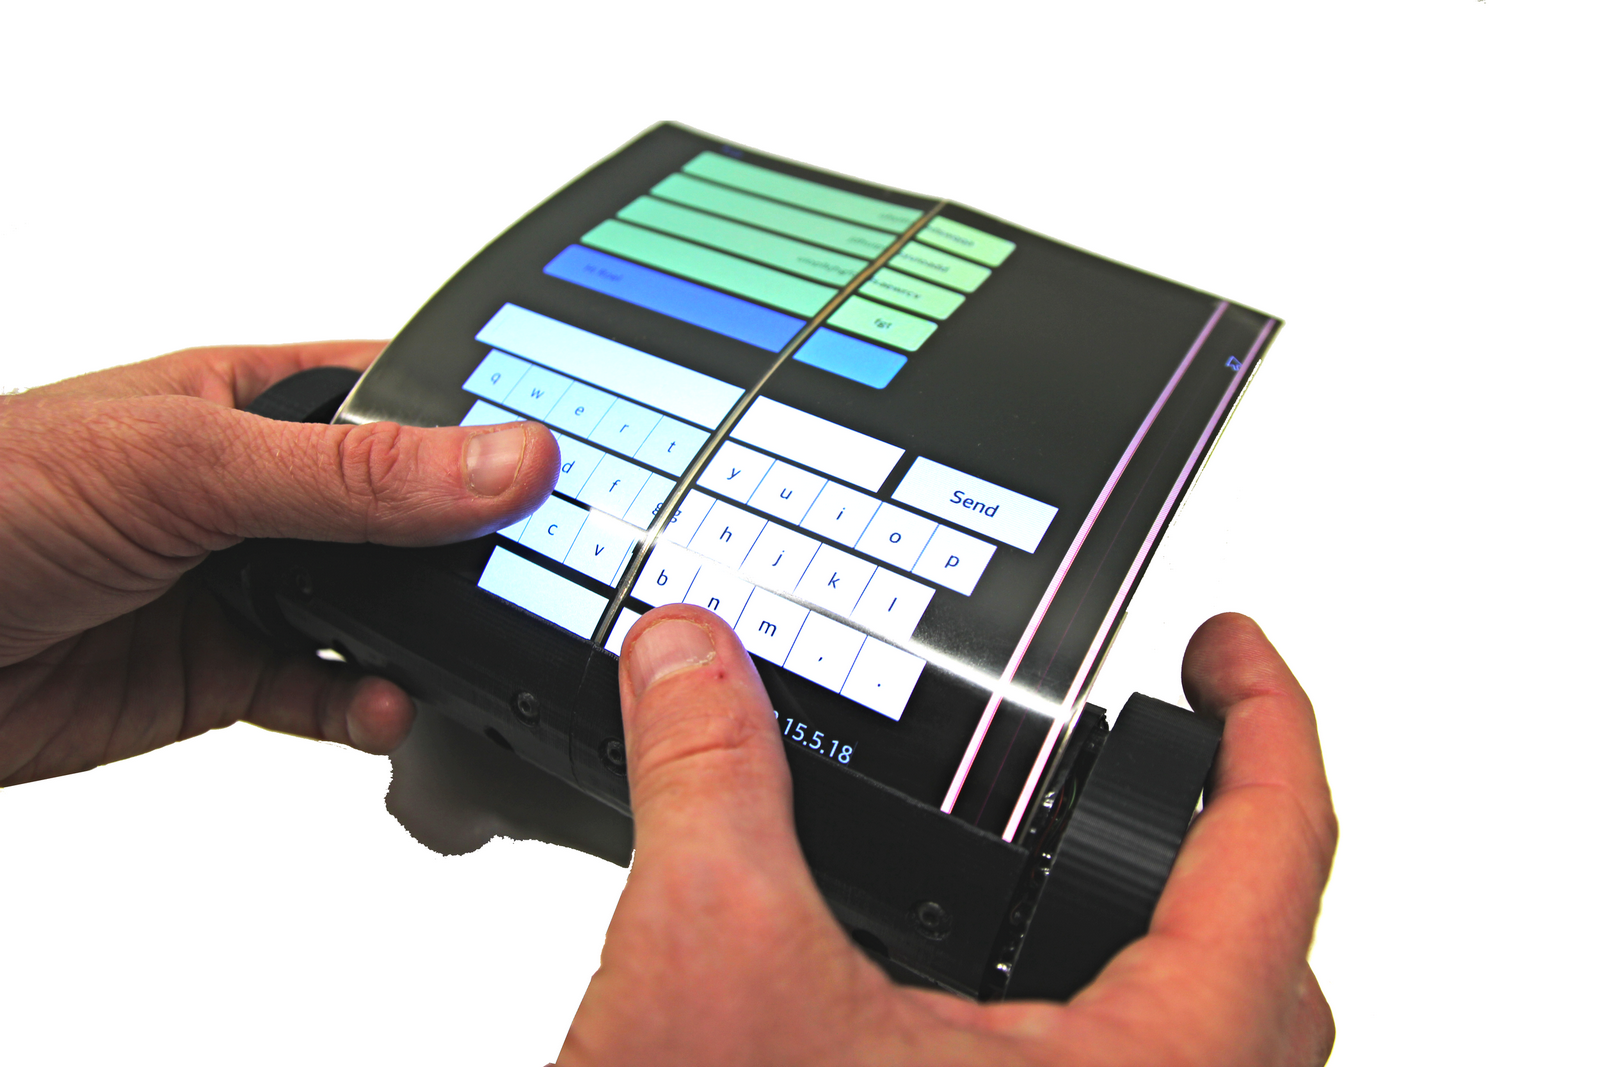 La tablette-smartphone MagicScroll est équipée d'un écran flexible de 7,5 pouces. © Human Media Lab.